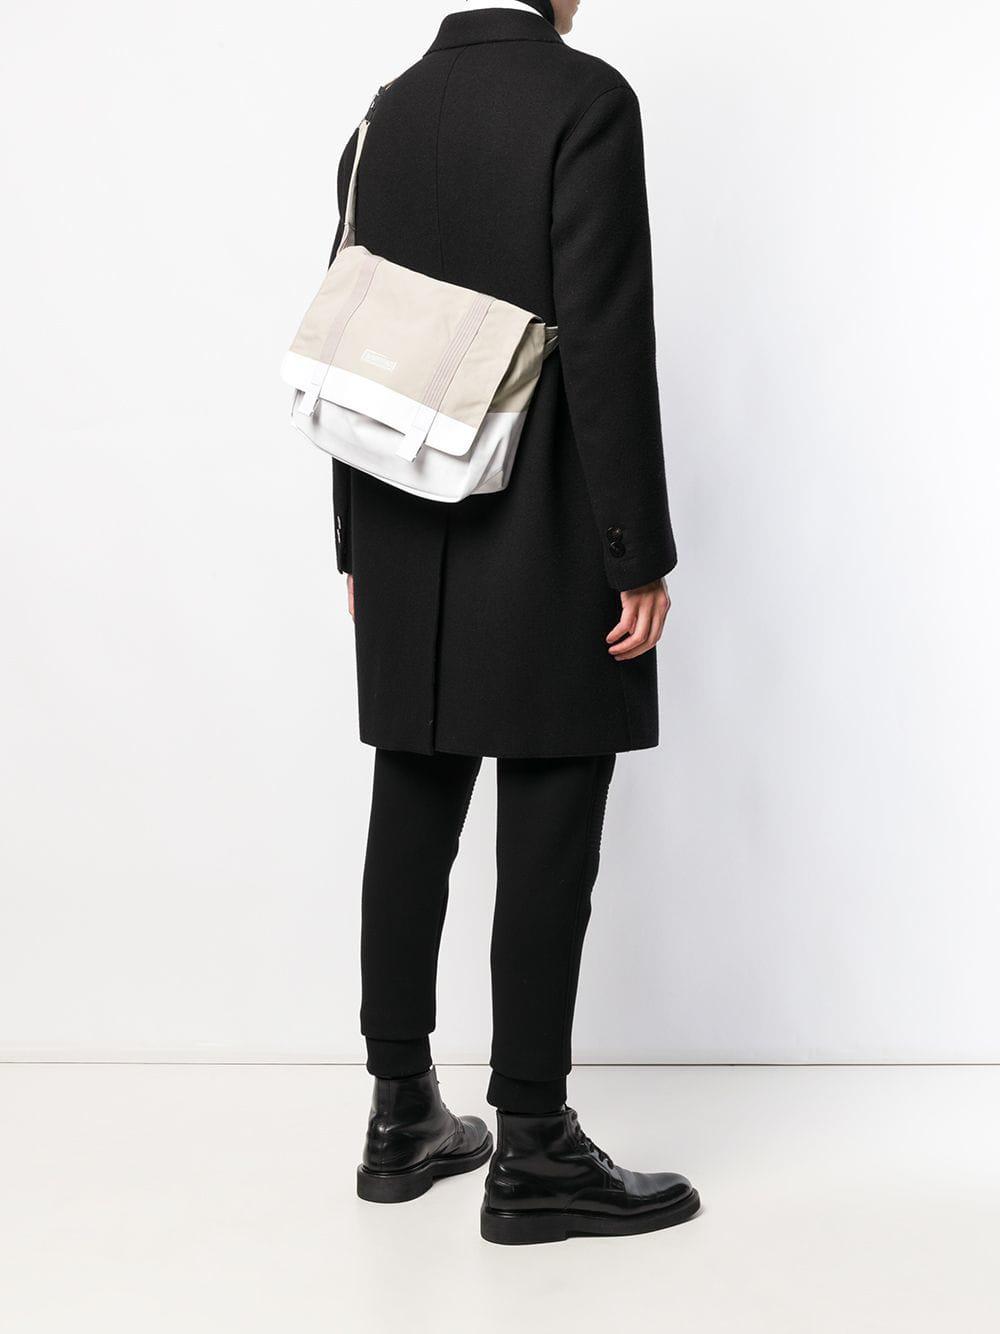 Eastpak Canvas X Kris Van Assche Messenger Bag for Men | Lyst